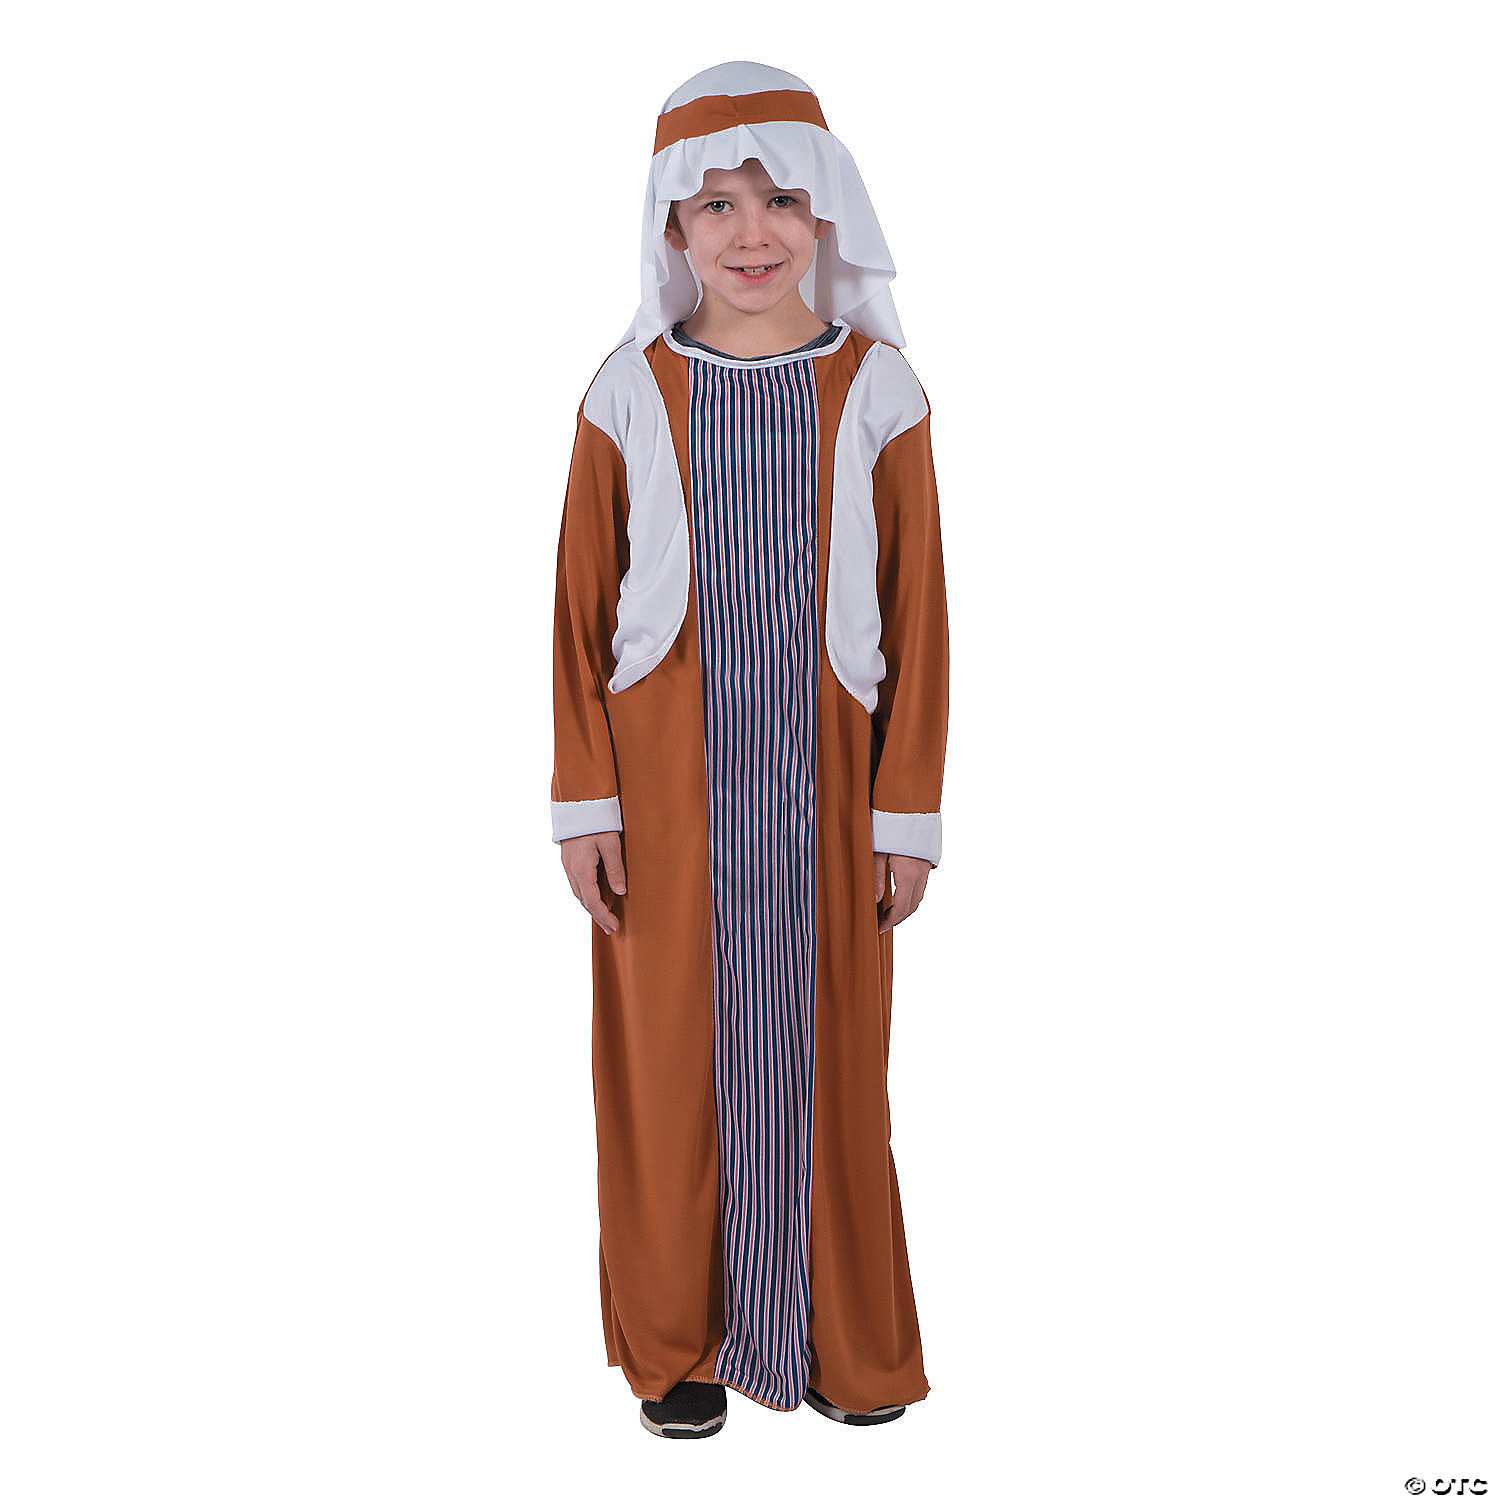 innkeeper nativity costume